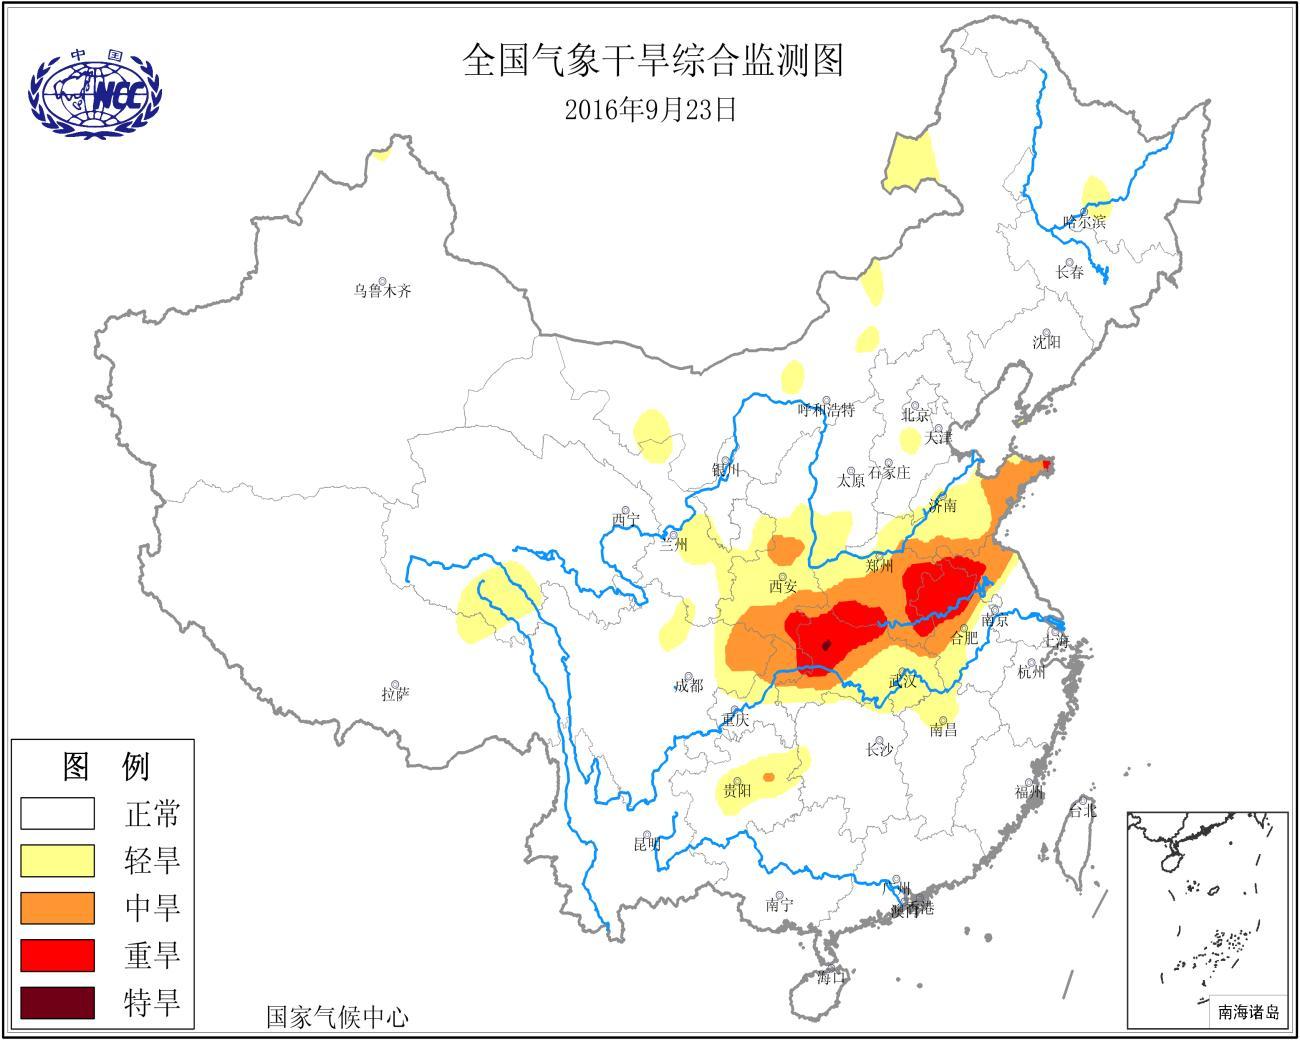 近代史上杀伤力最大的十次地震, 其中有三次在中国